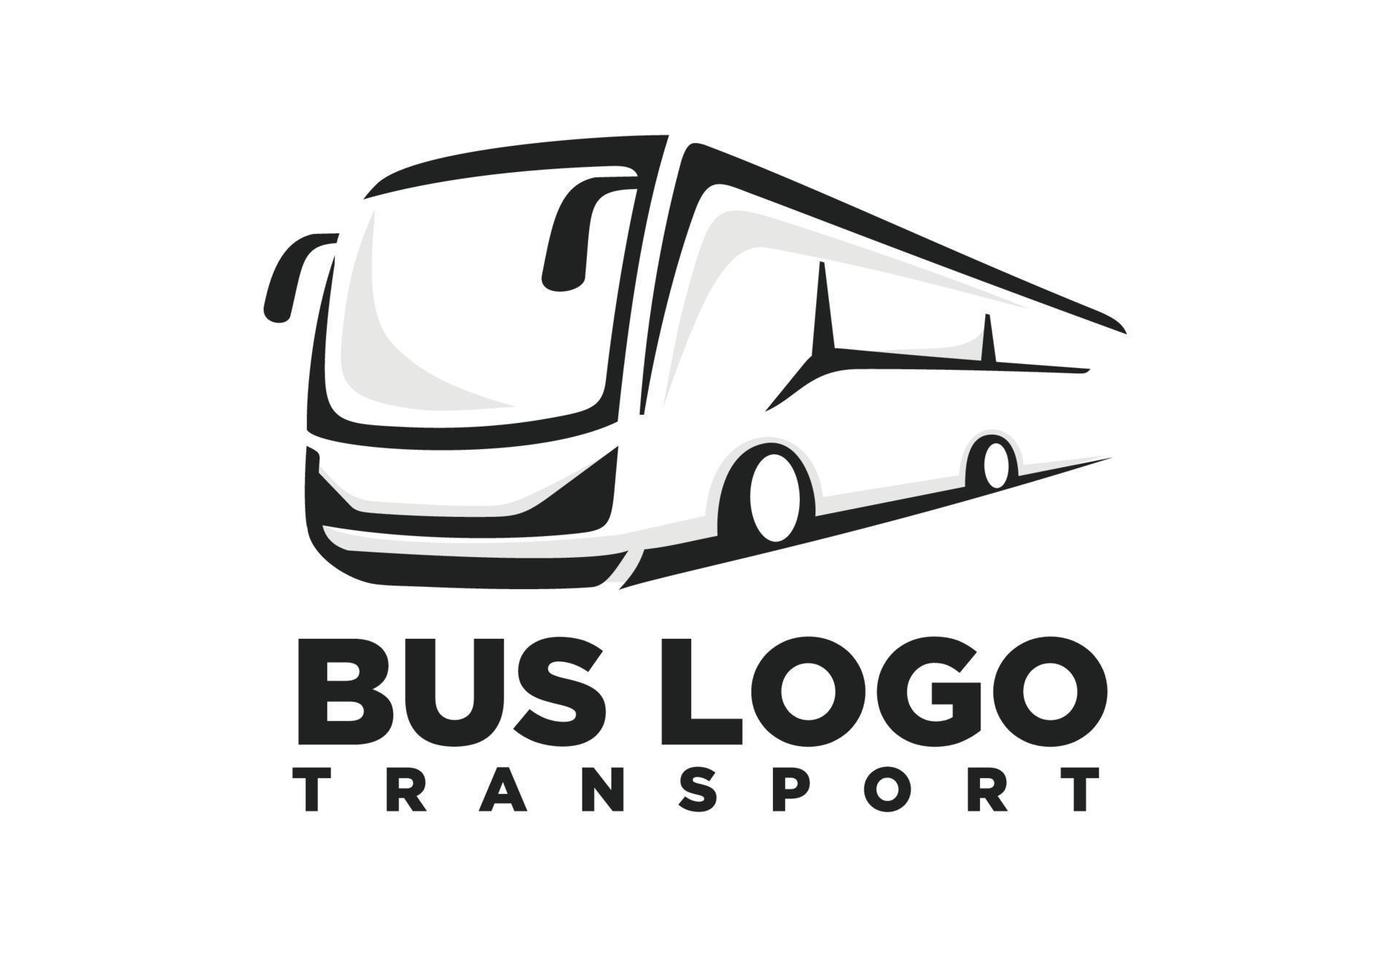 Bus. Travel bus logo design vector